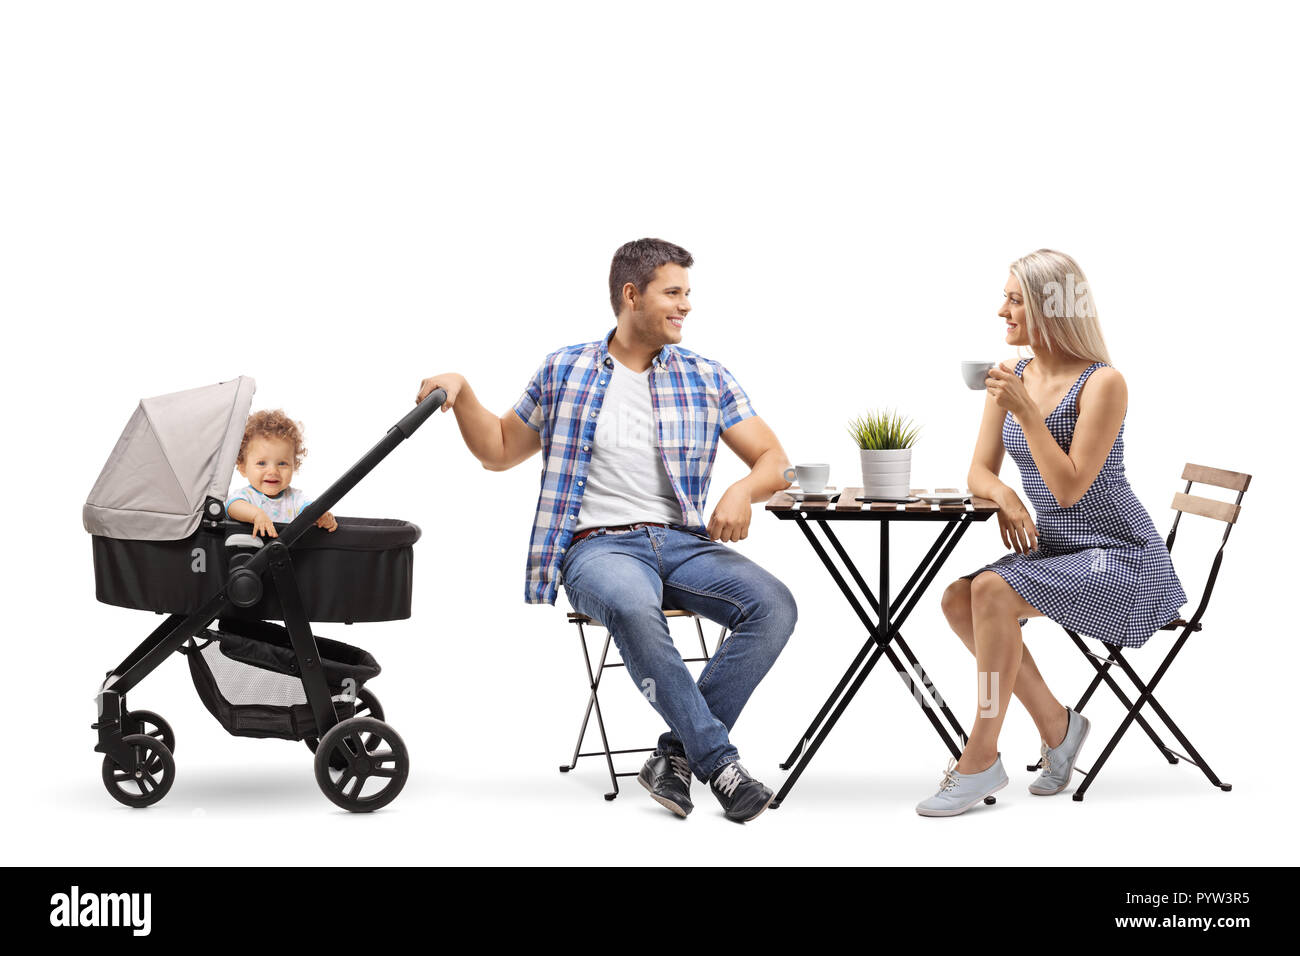 family stroller chair